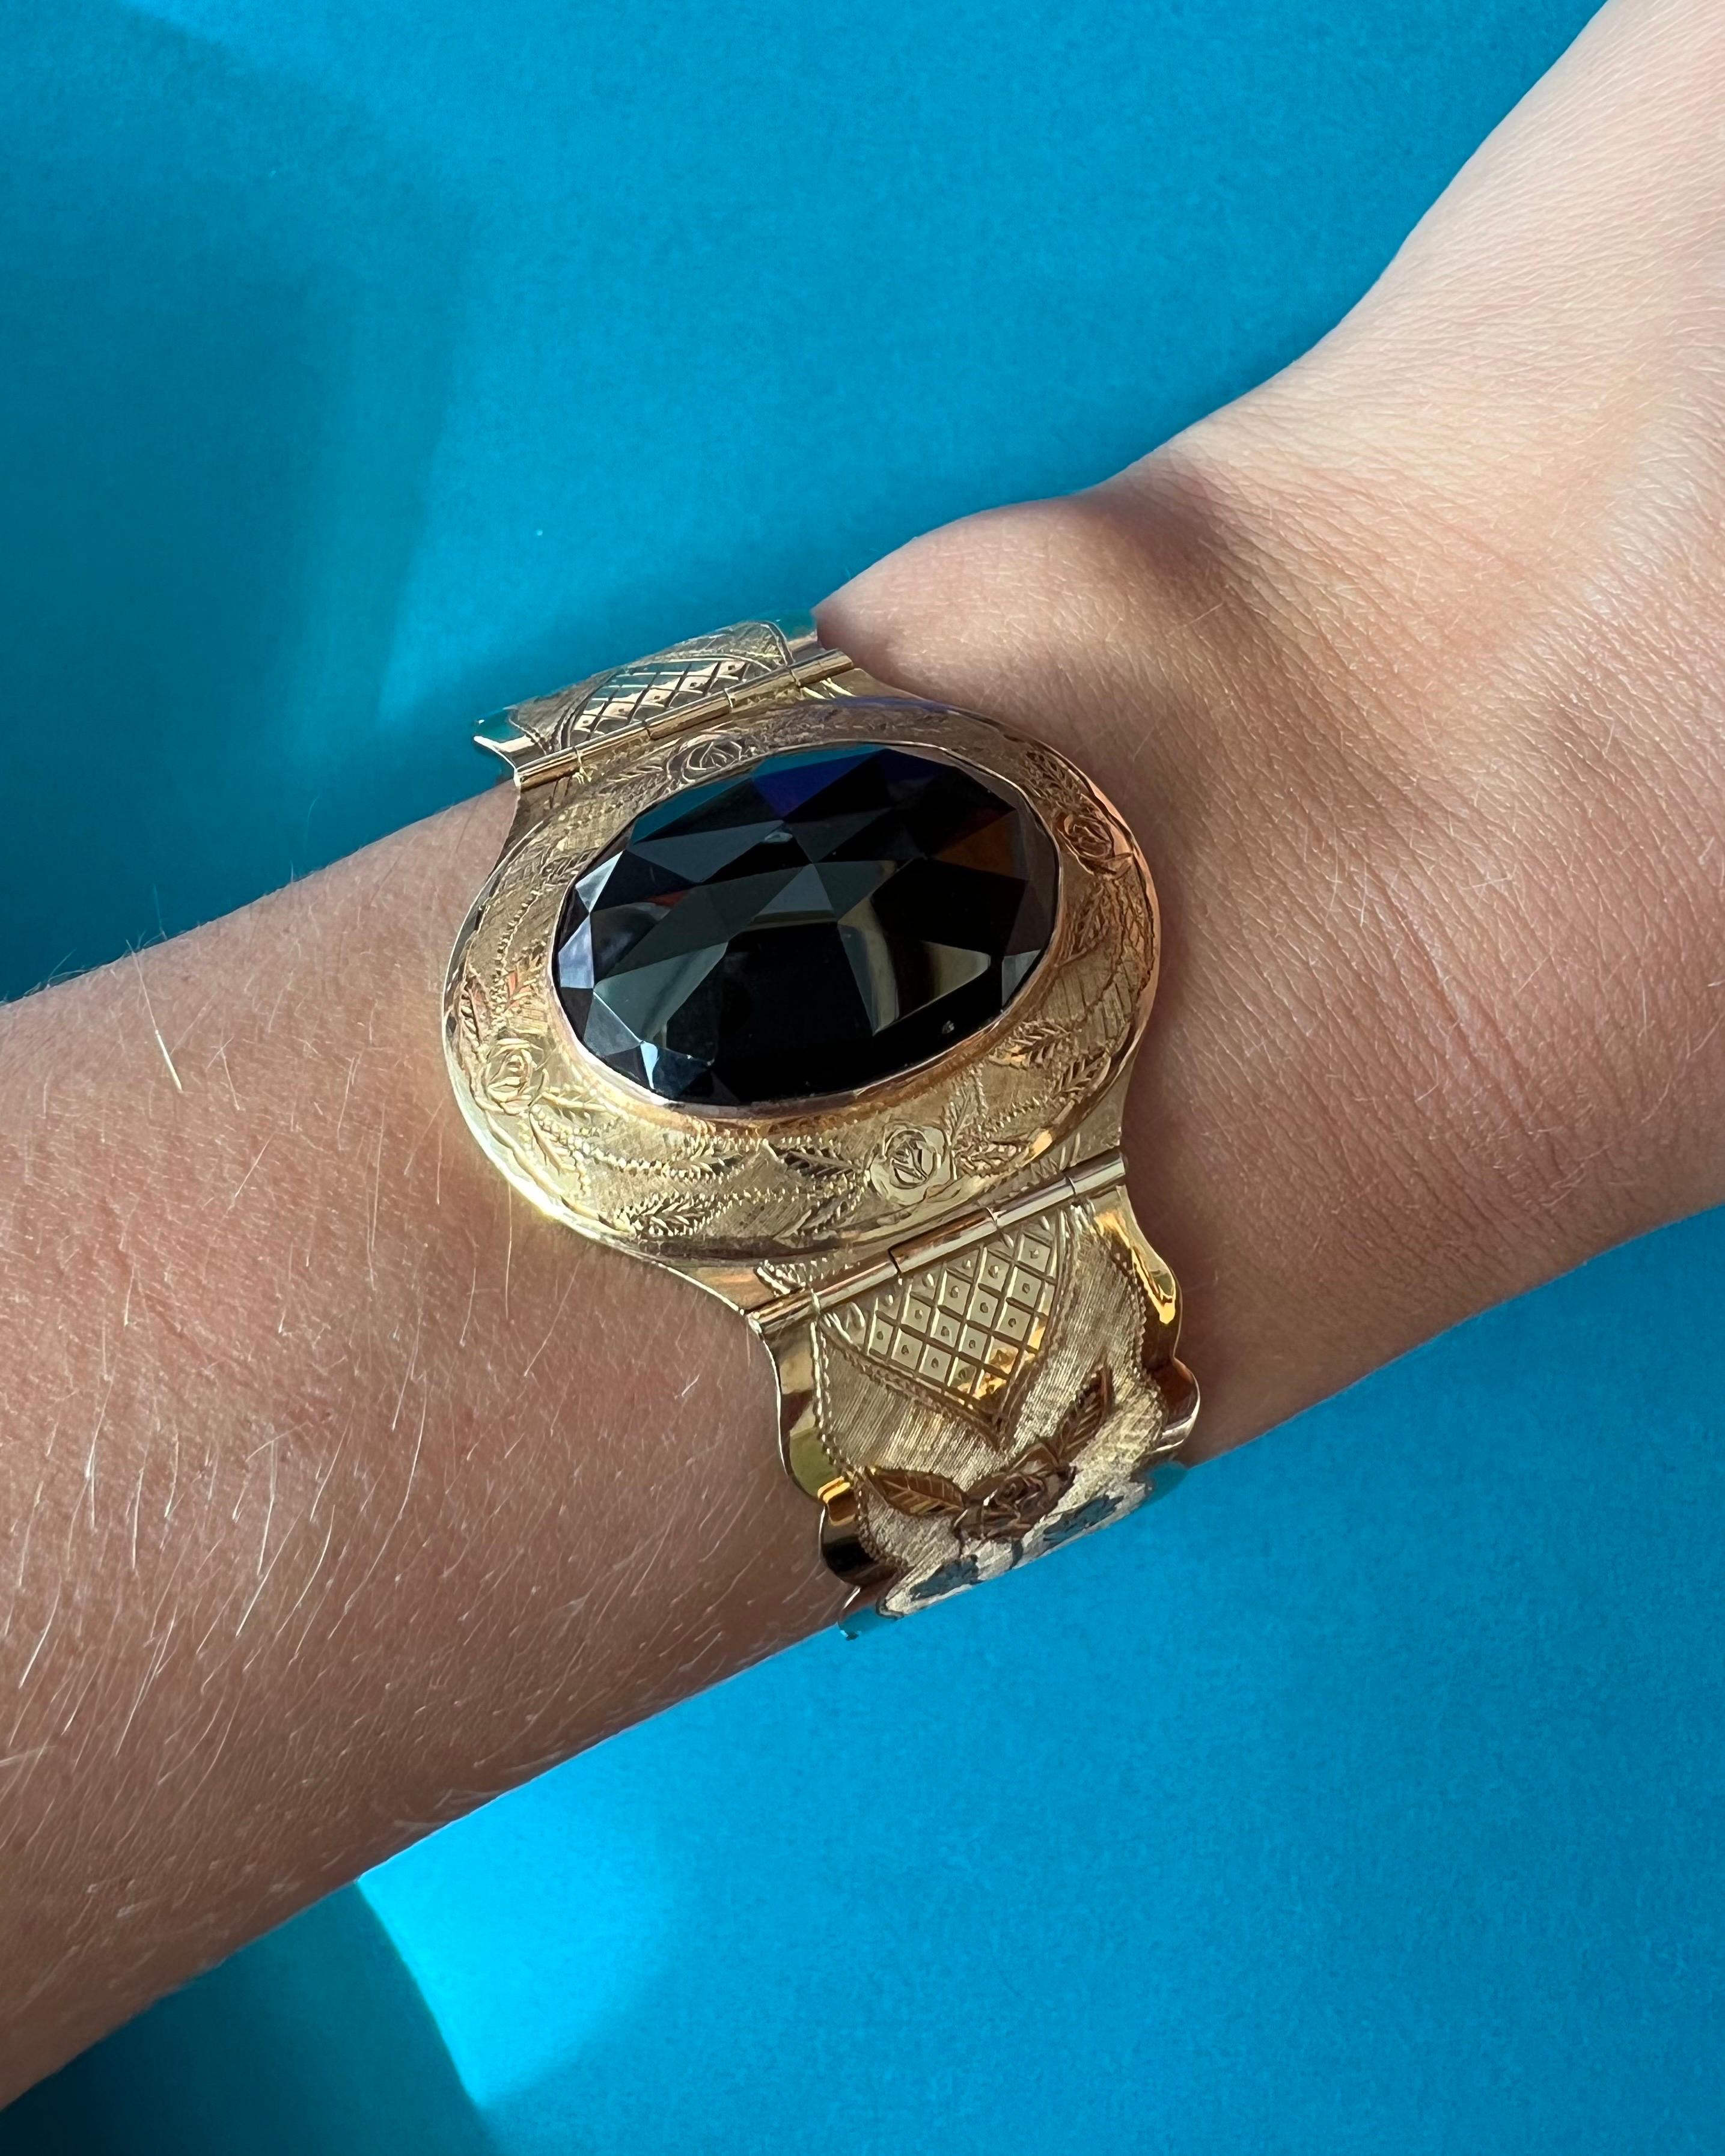 Ein wunderschönes Armband aus der spätviktorianischen Ära, ca. 1870-1890er Jahre. Das aus 14 Karat Roségold gefertigte Design bietet eine wunderschöne Kombination aus dem tief gefärbten Almandin-Granat im Rosenschliff und dem gravierten Gold. Das